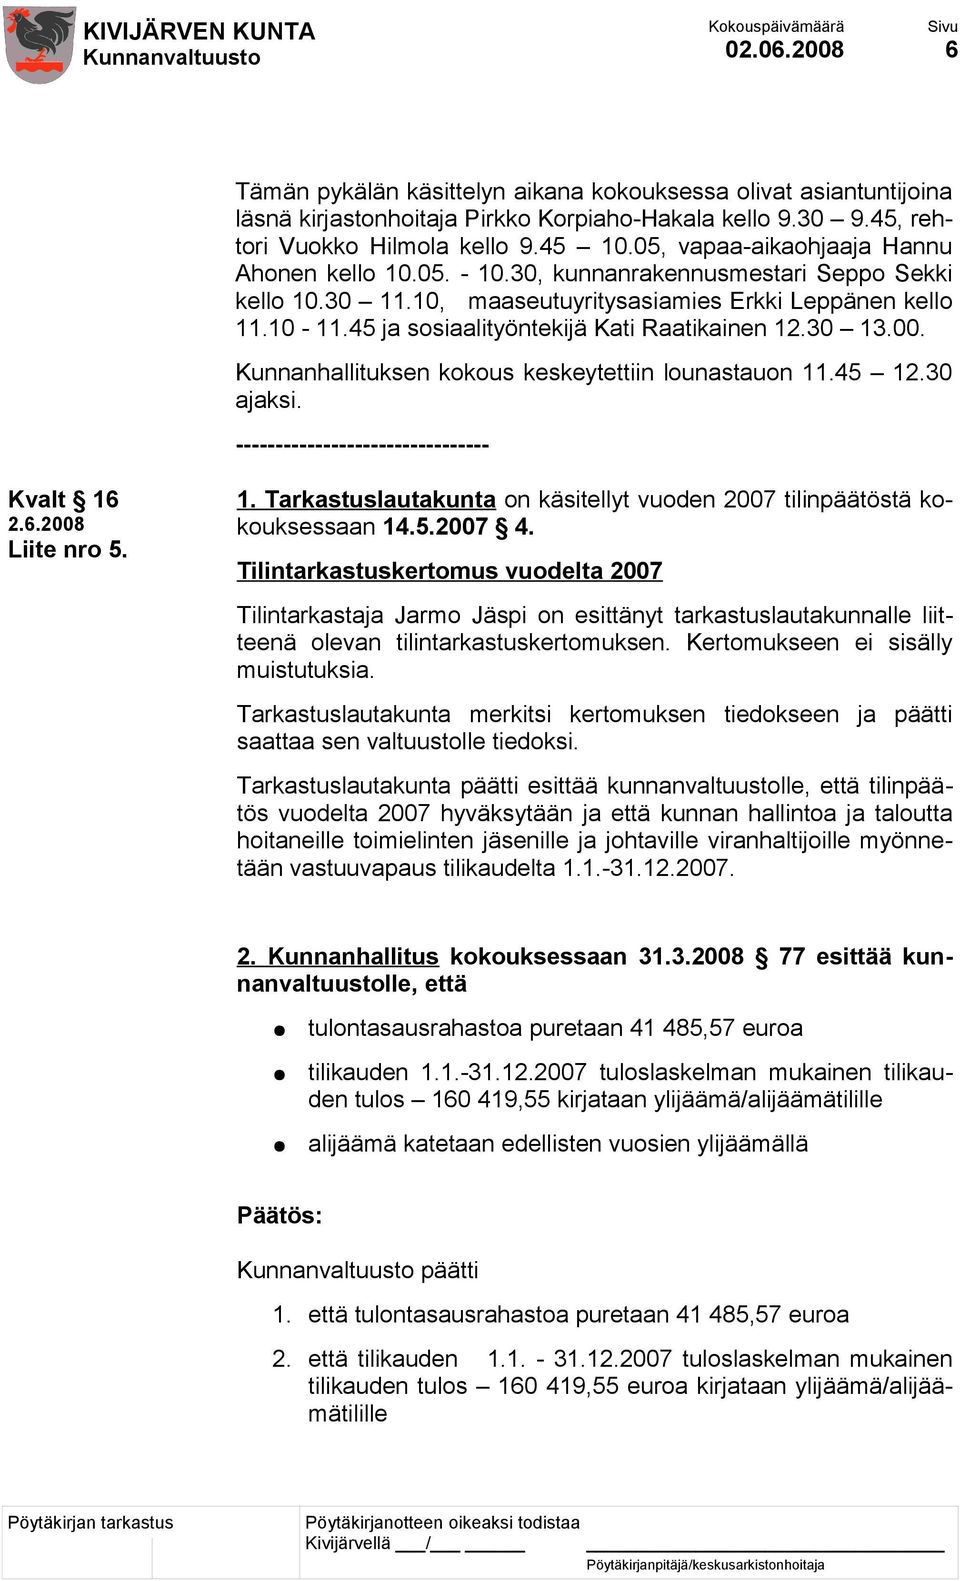 45 ja sosiaalityöntekijä Kati Raatikainen 12.30 13.00. Kunnanhallituksen kokous keskeytettiin lounastauon 11.45 12.30 ajaksi. -------------------------------- Kvalt 16 Liite nro 5. 1. Tarkastuslautakunta on käsitellyt vuoden 2007 tilinpäätöstä kokouksessaan 14.